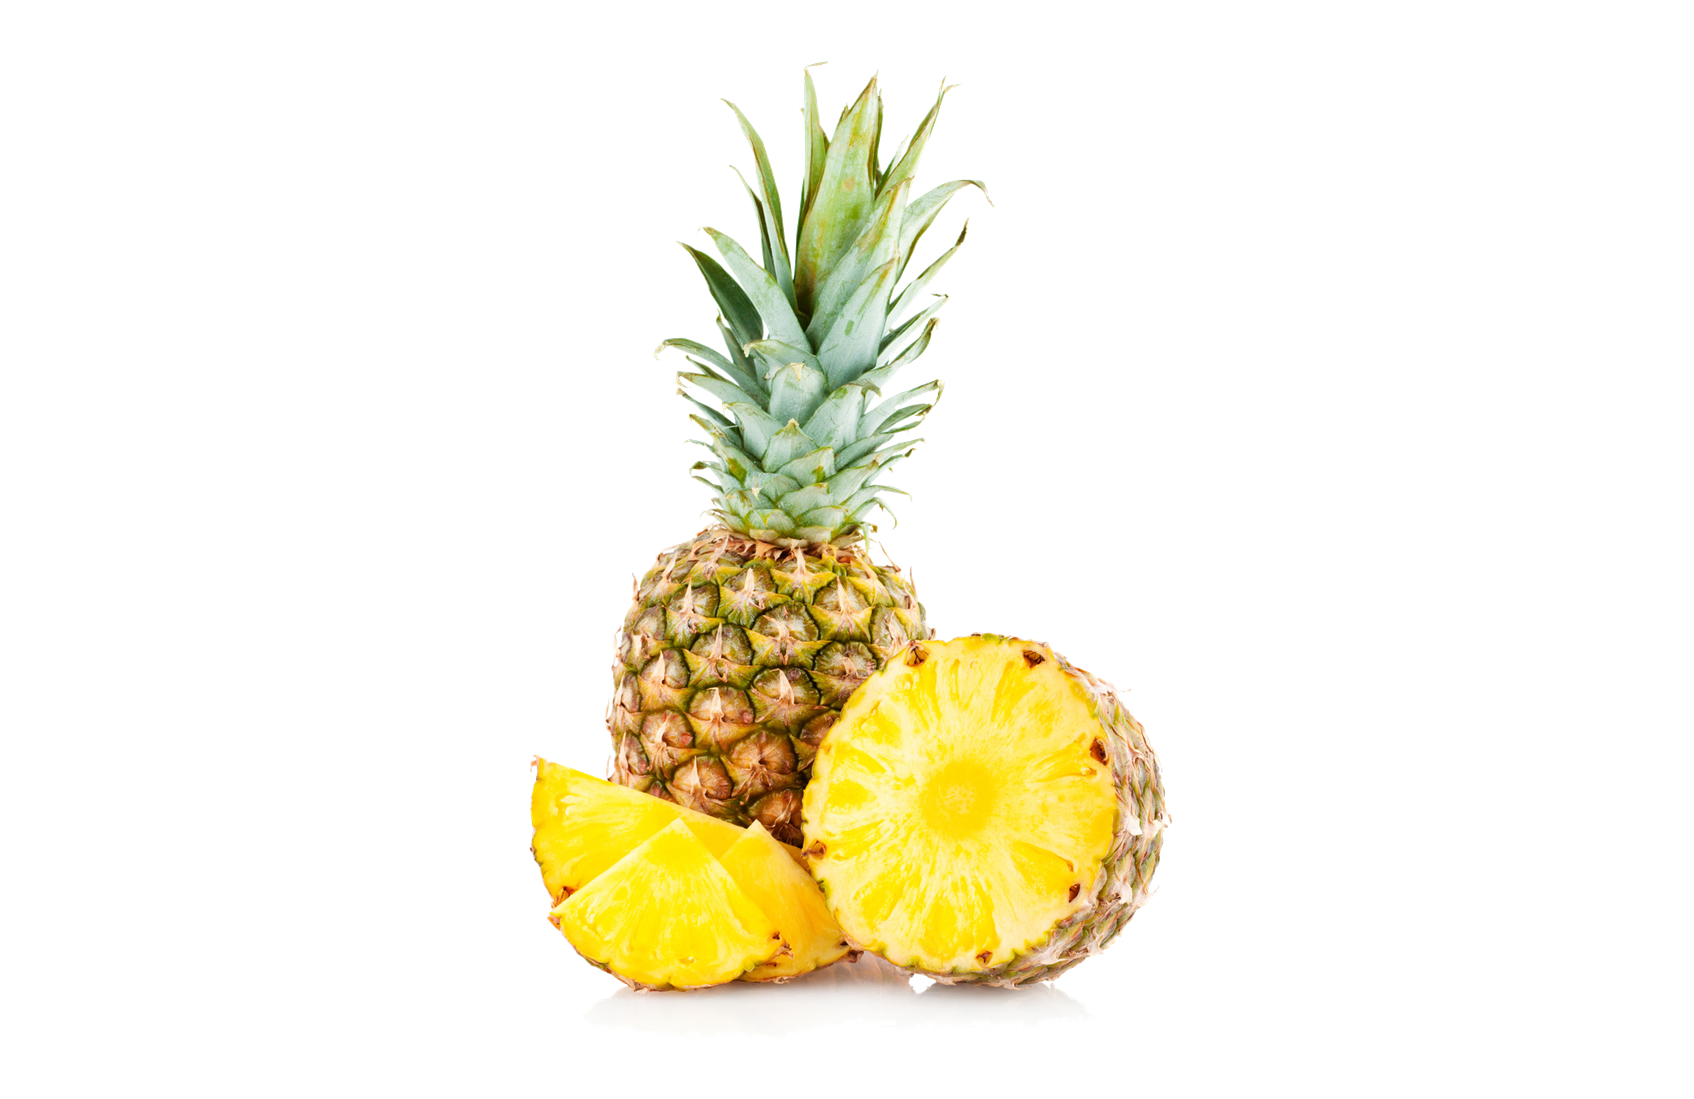 Ananasi ndihmon në tretjen e ushqimit